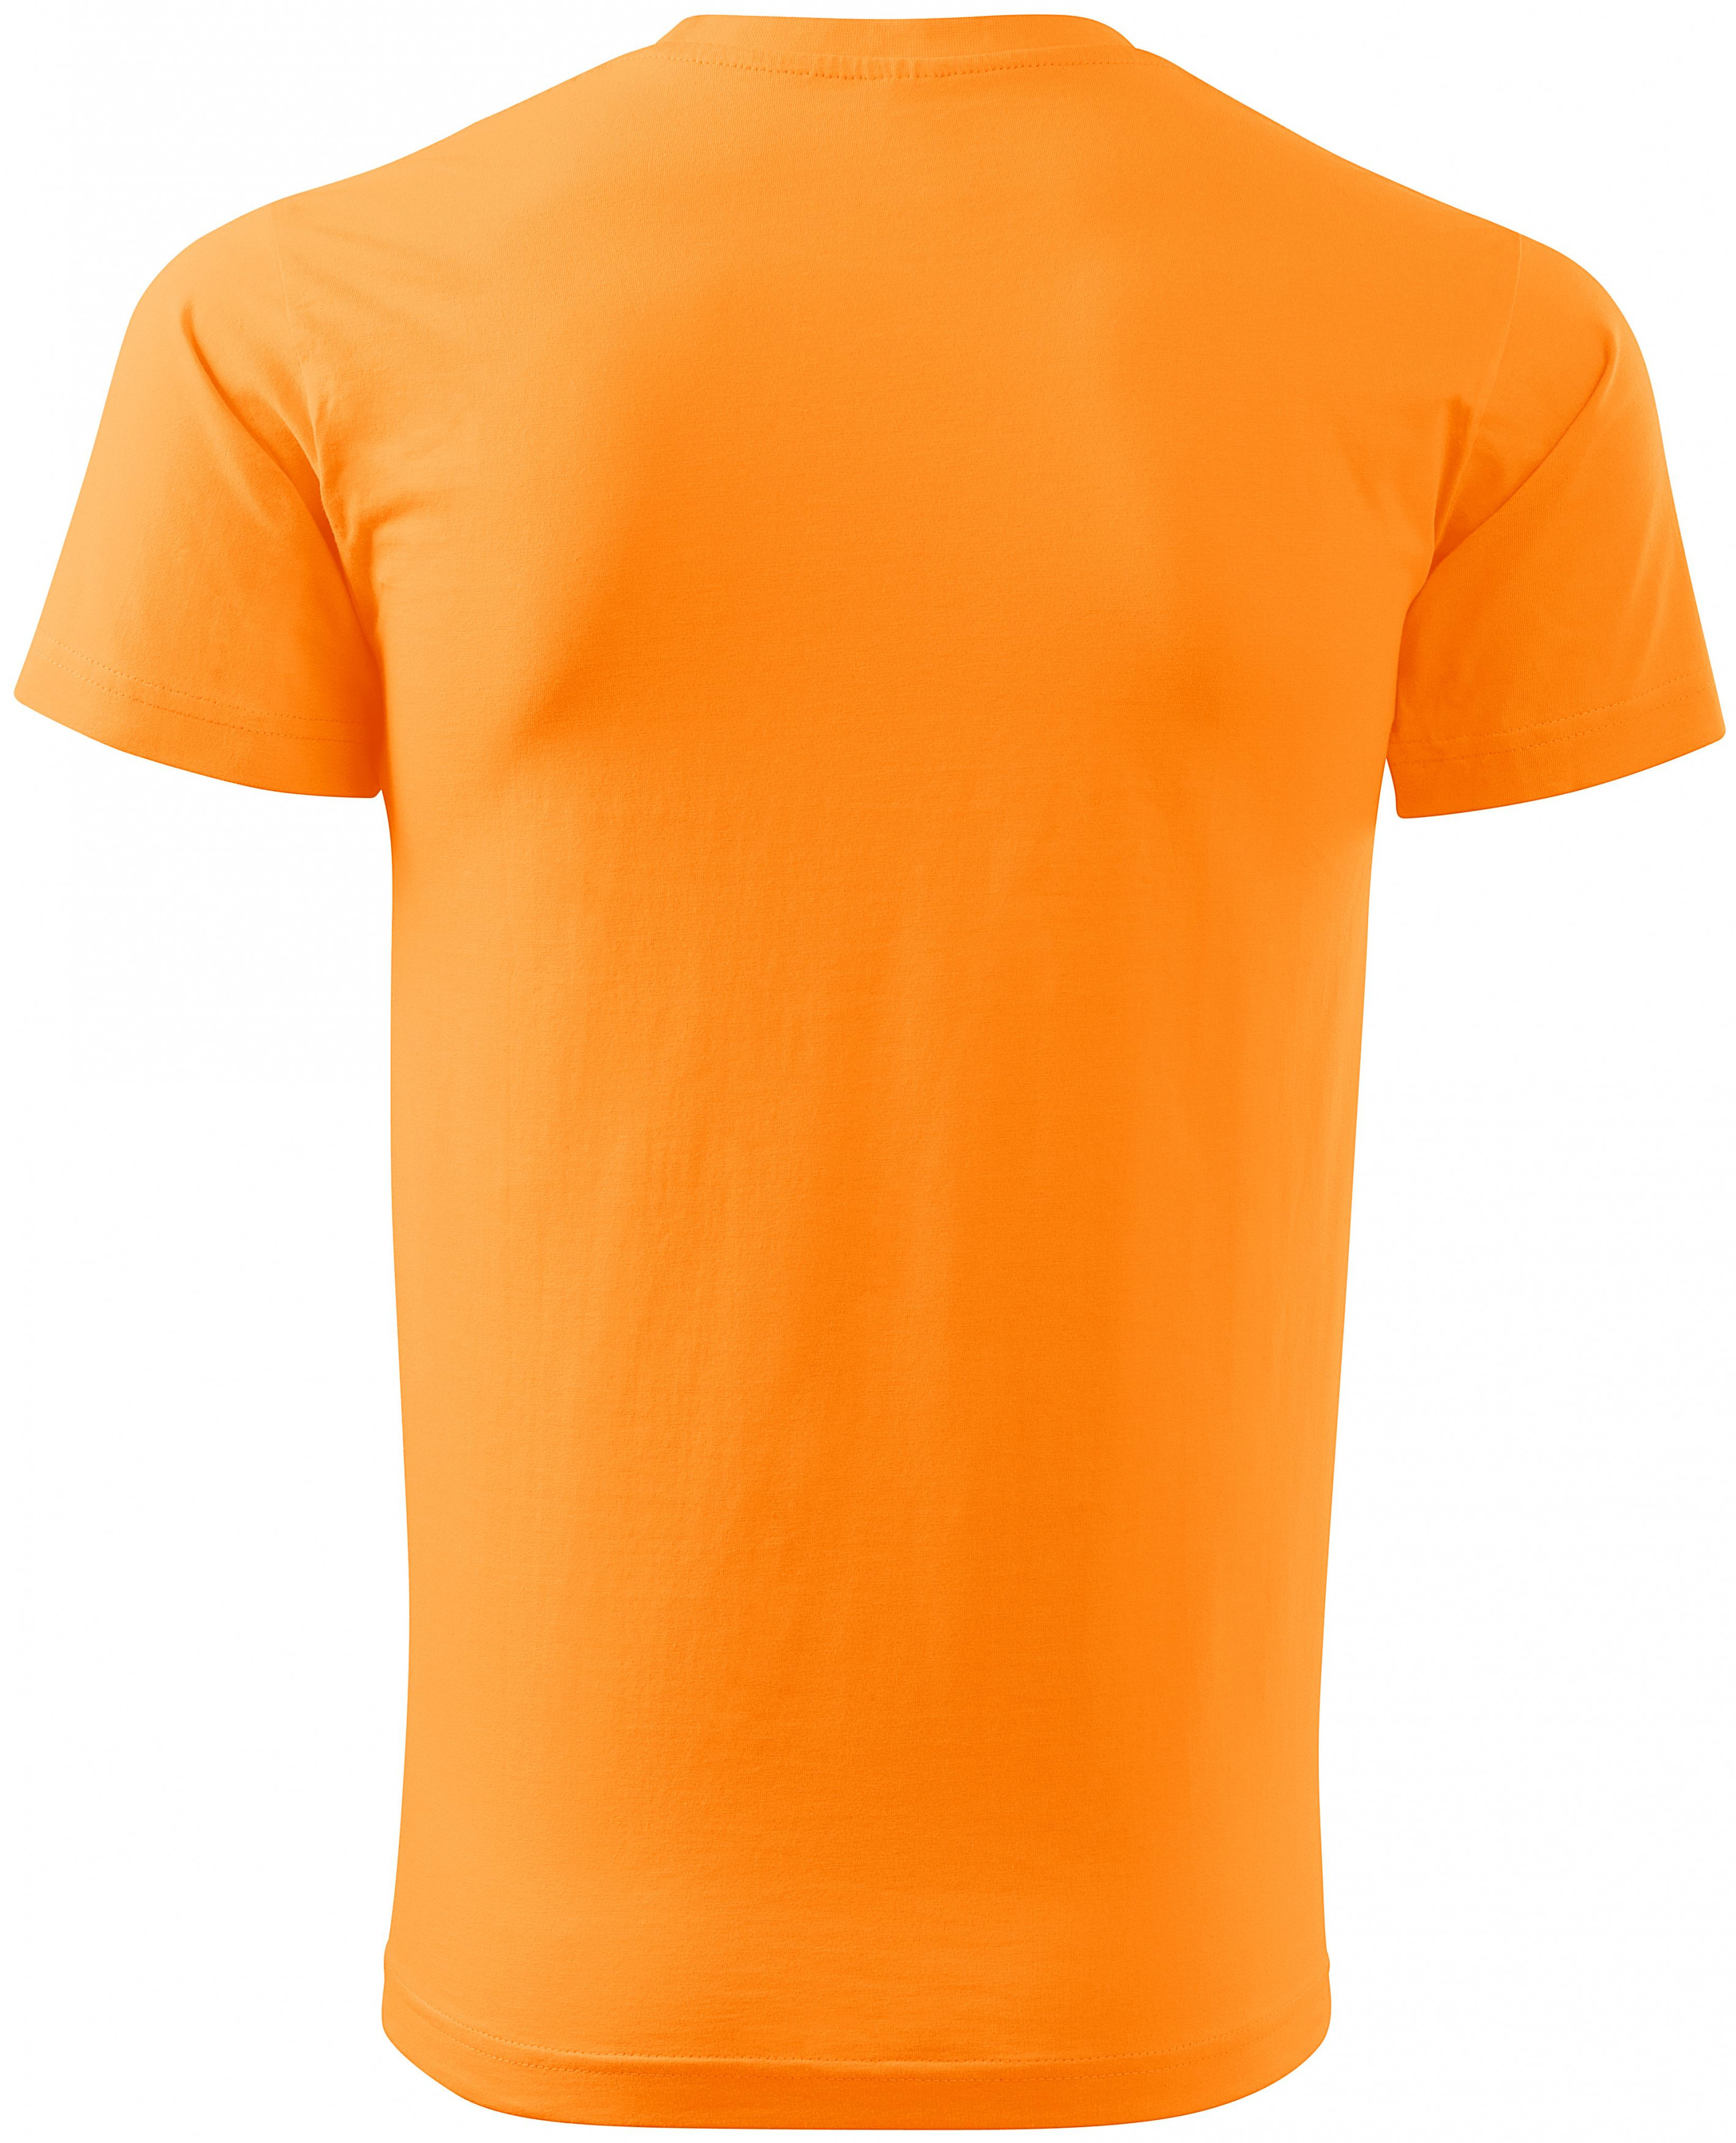 Tričko vyššej gramáže unisex, mandarínková oranžová, M